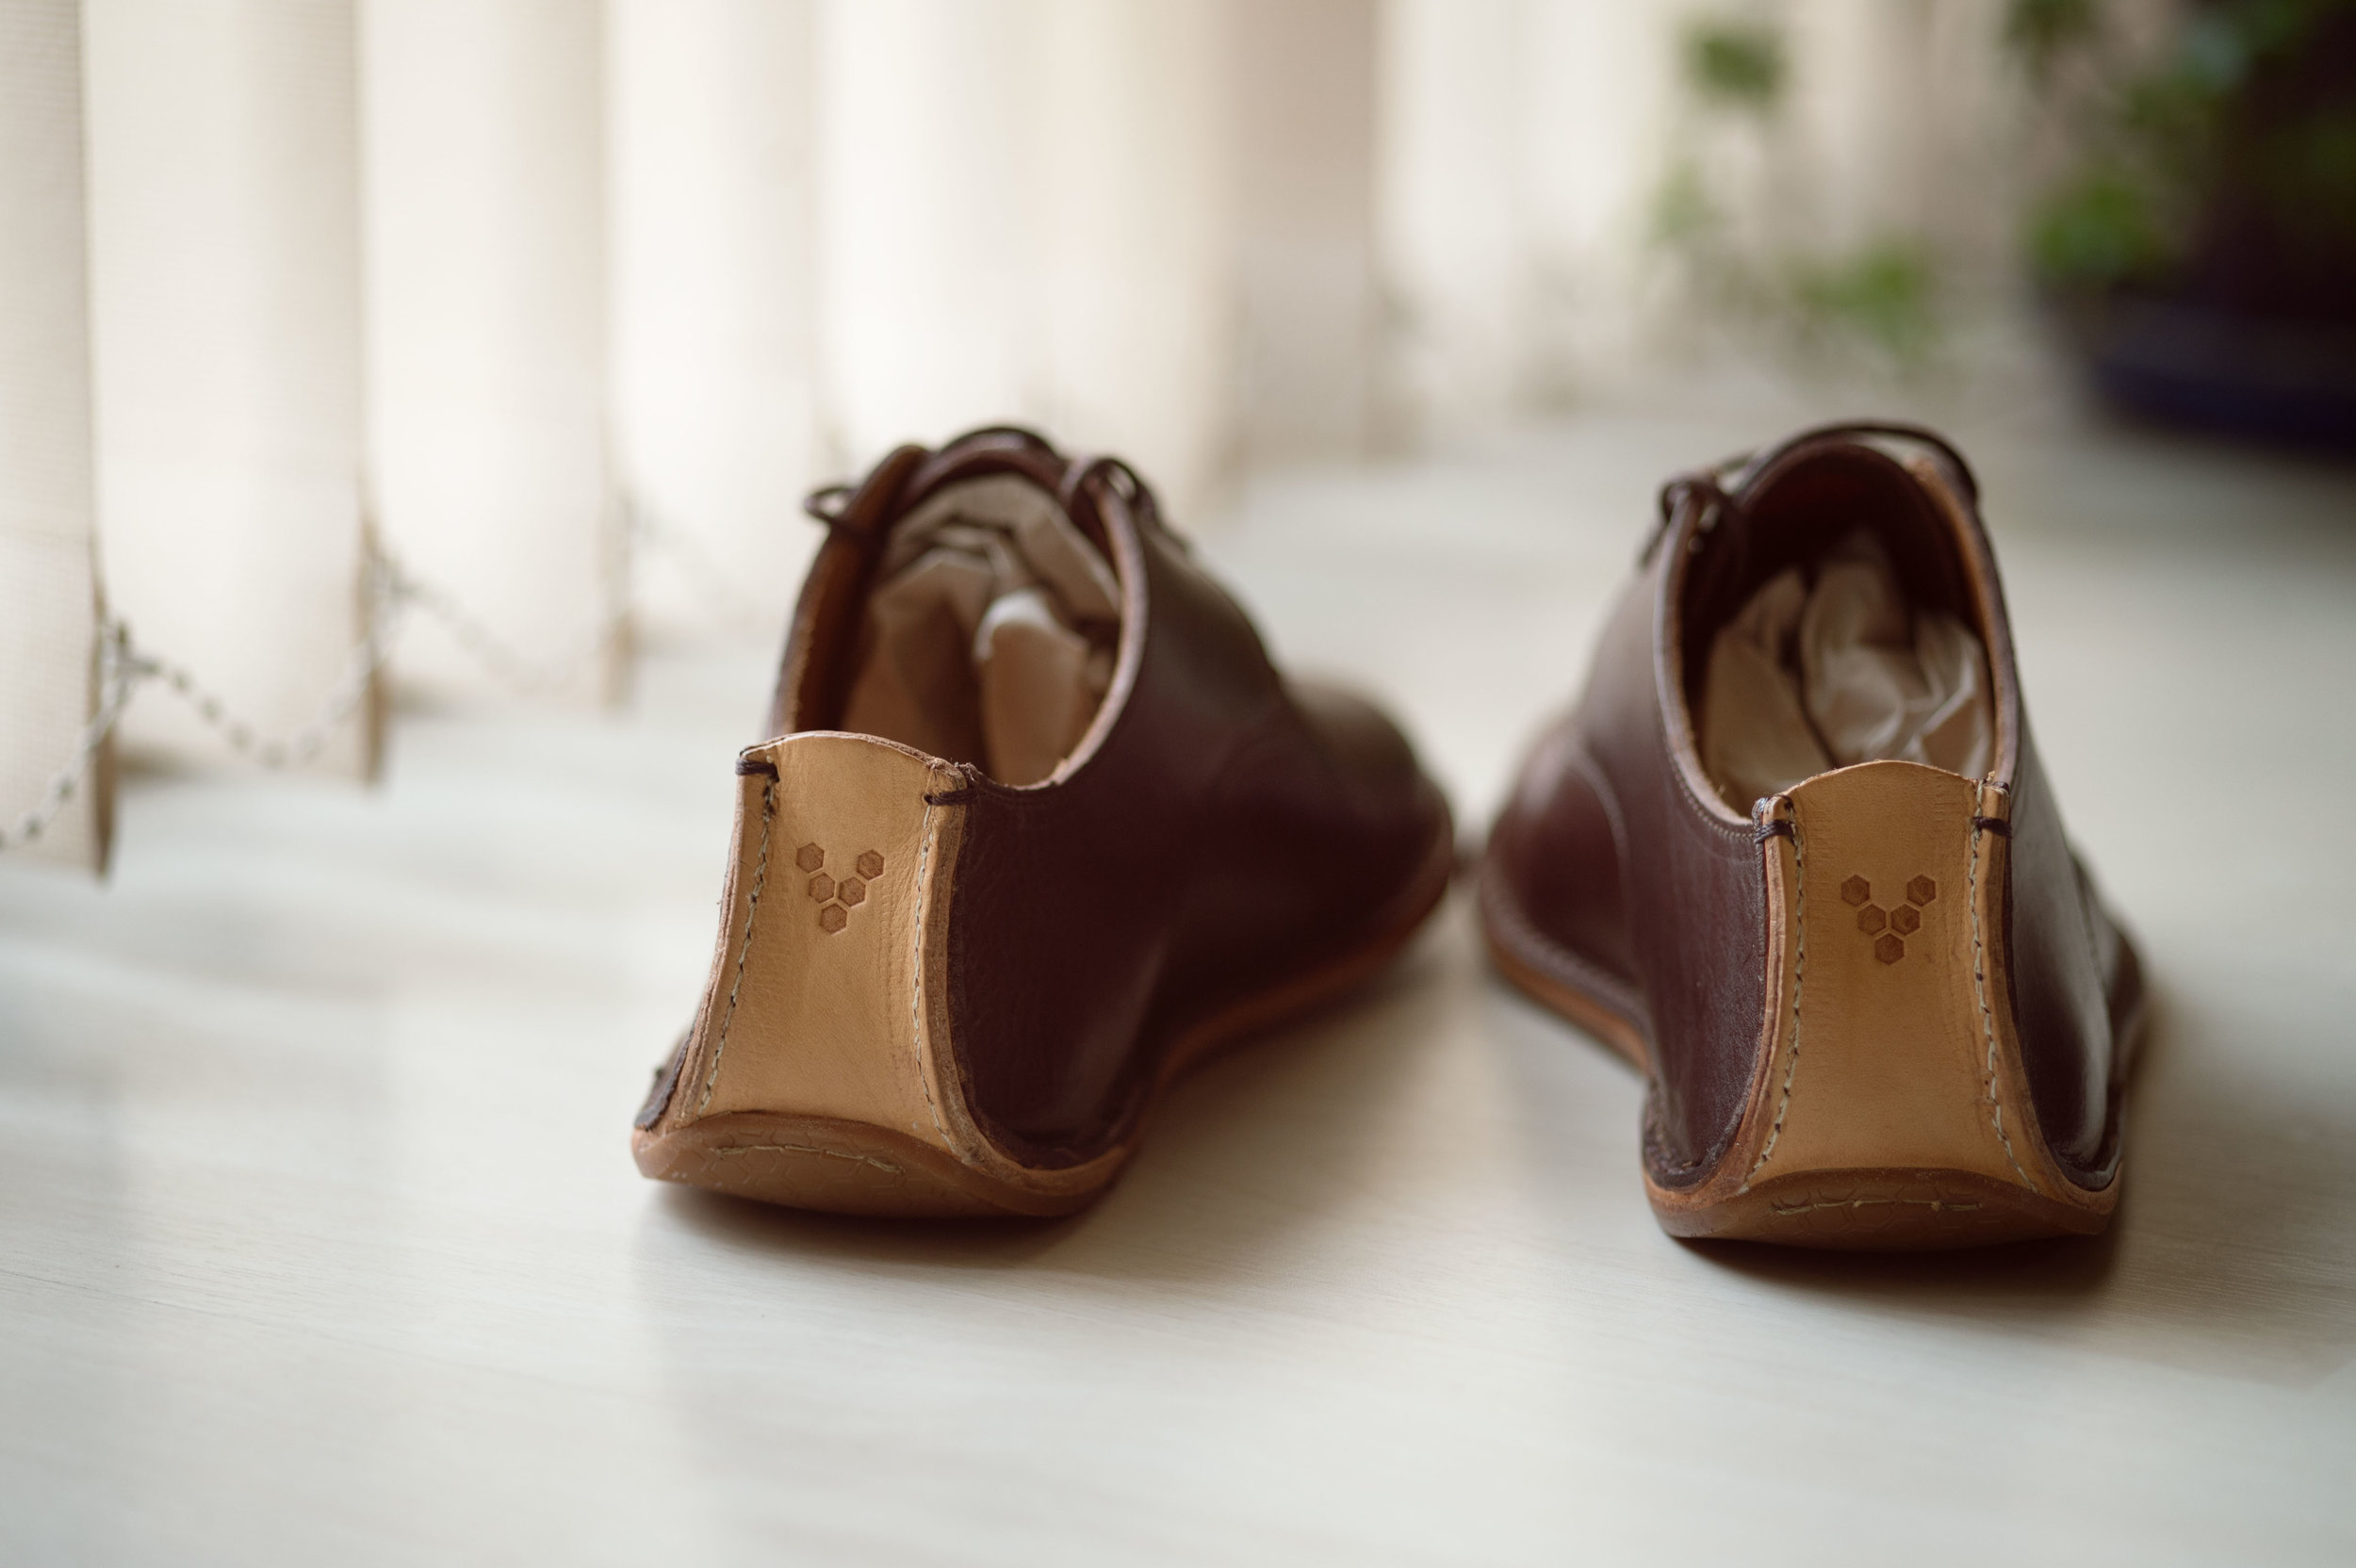 Barefoot_runner_office_shoes_thetrinerd_aniko_towers_photo-14.jpg